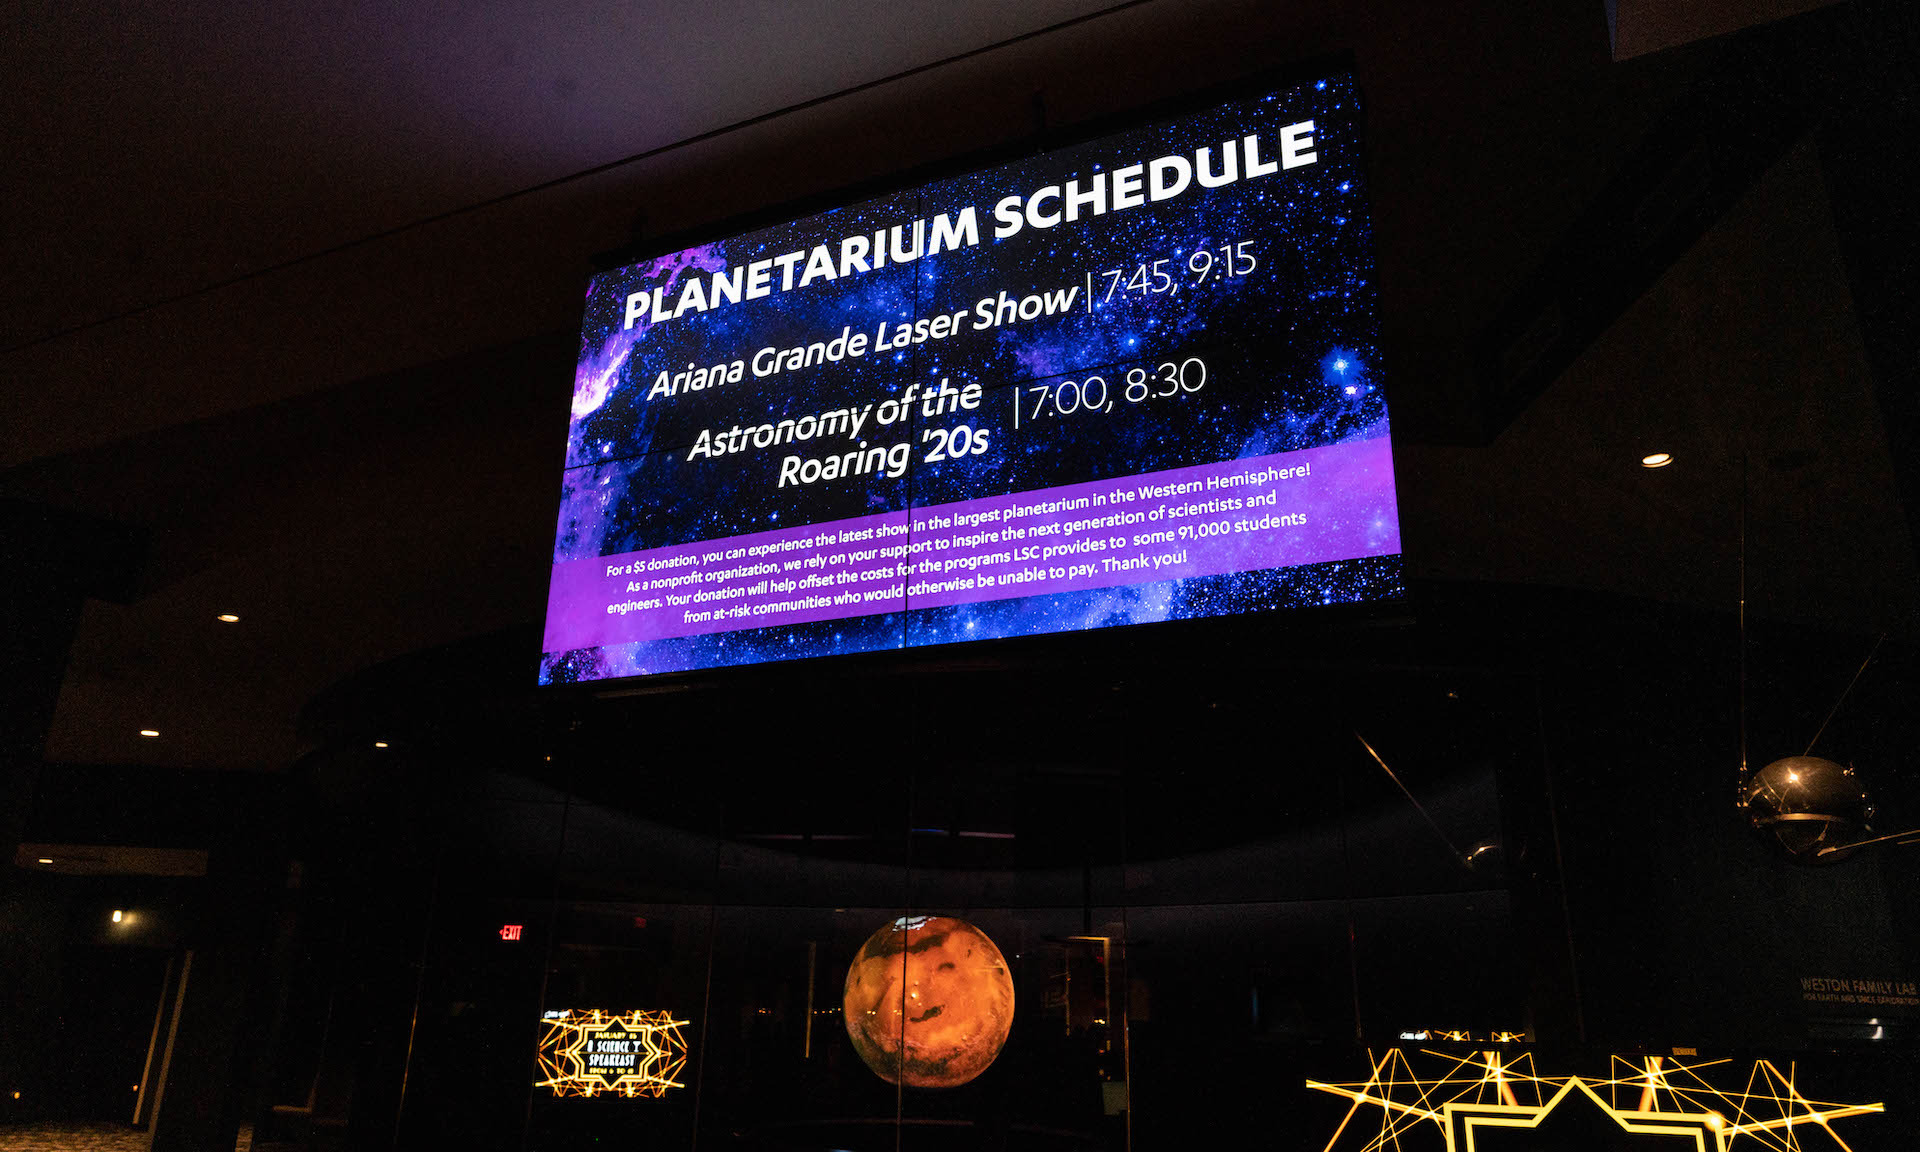 Planetarium showtime schedule